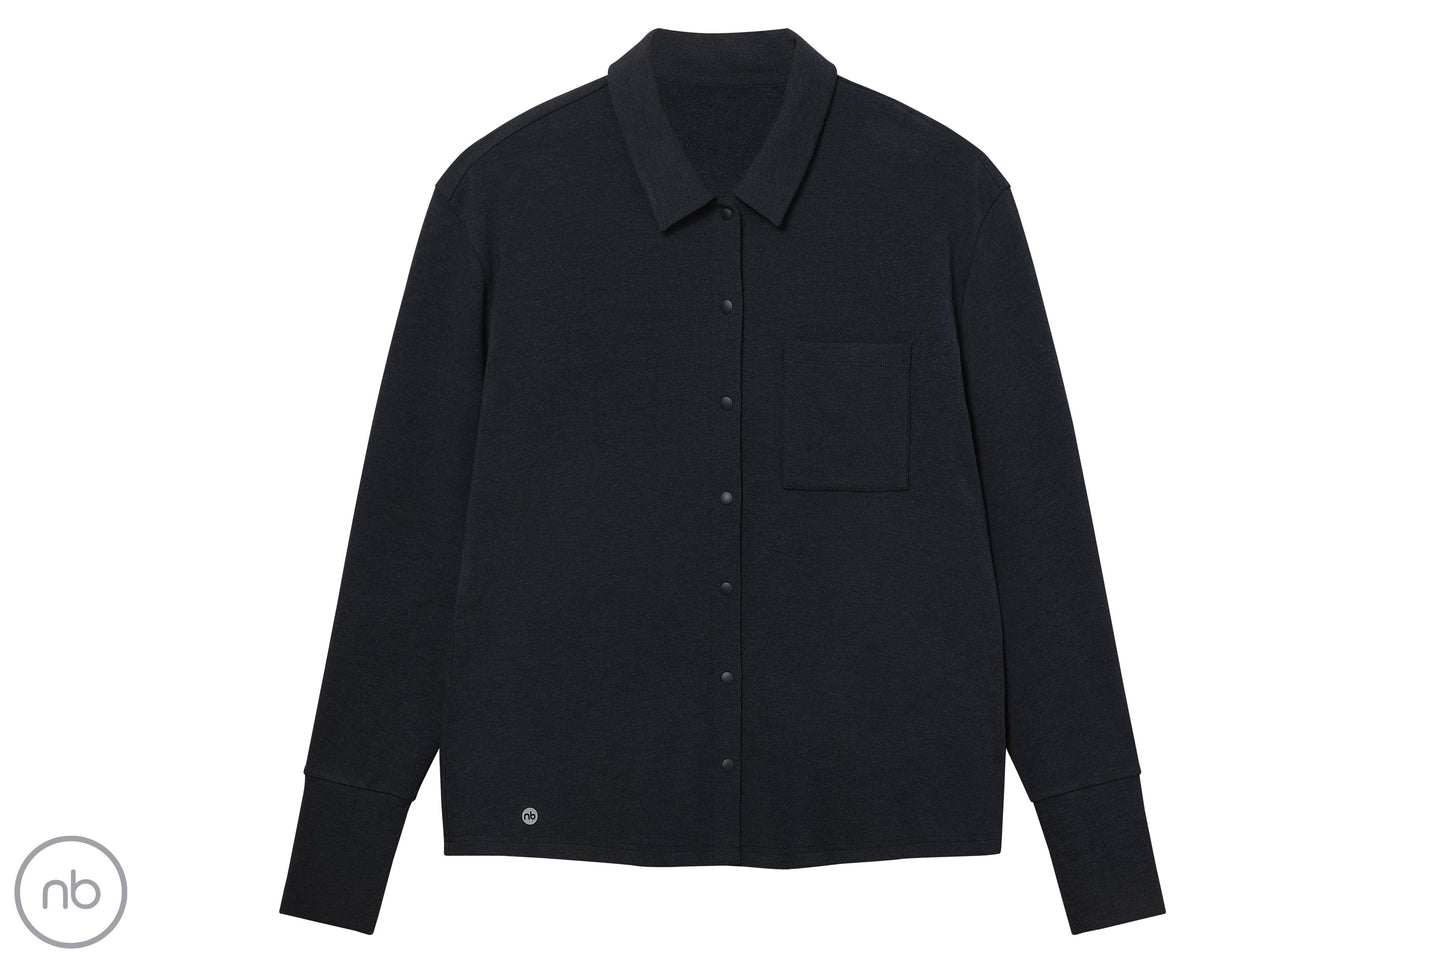 Basics Women's Winter Button Up Shirt (Bamboo Tanboocel) - Black